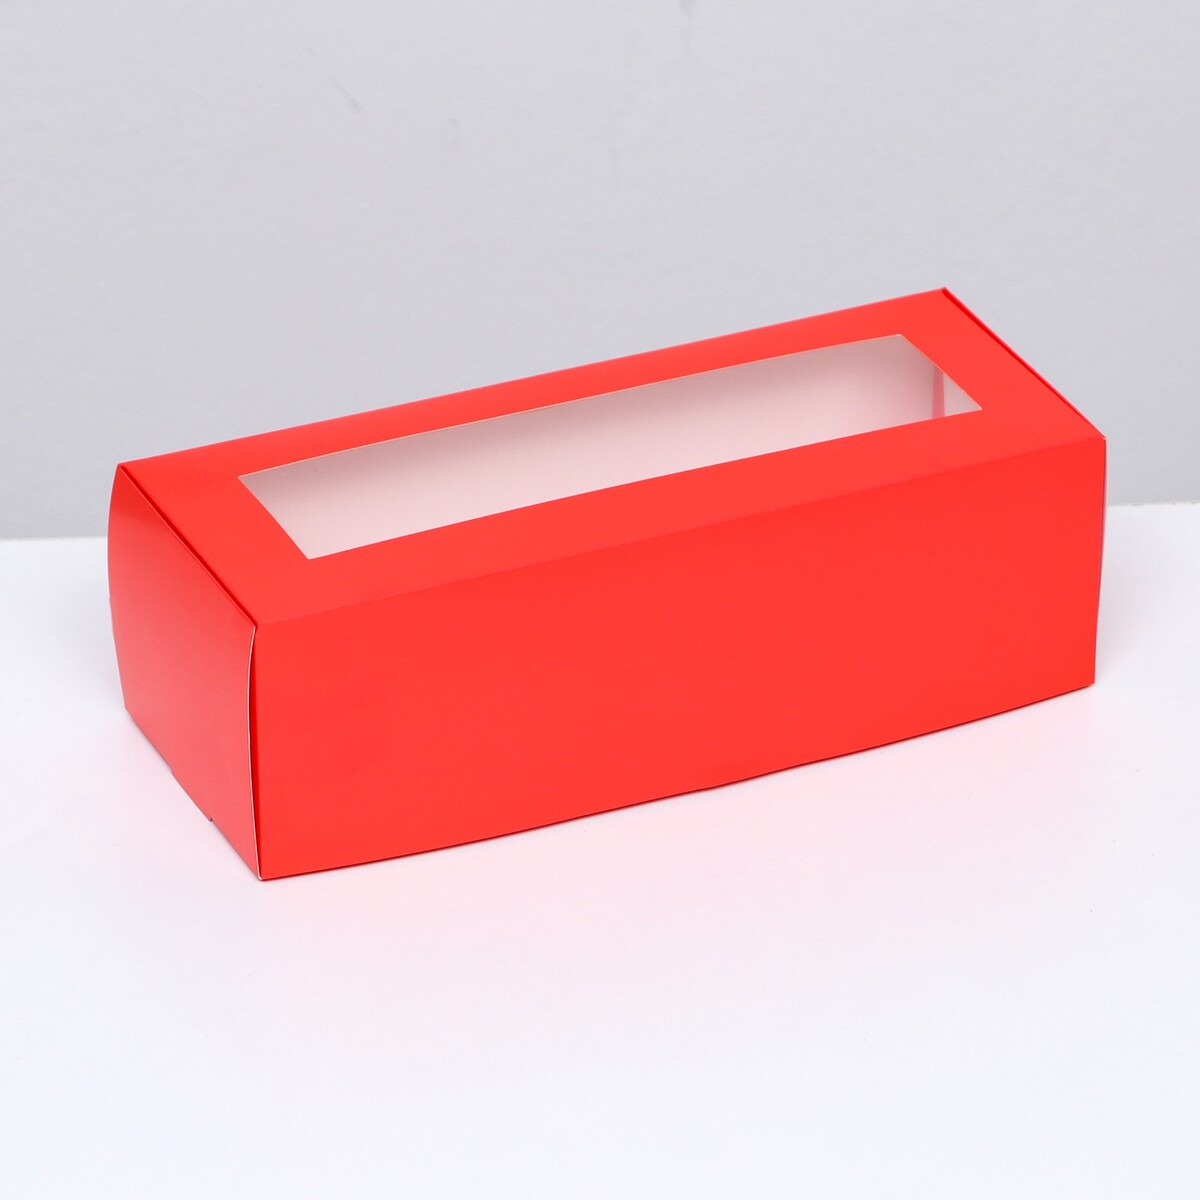 Коробка складная с окном под рулет, красная, 26 х 10 х 8 см коробка складная с окном под рулет голубая 26 х 10 х 8 см